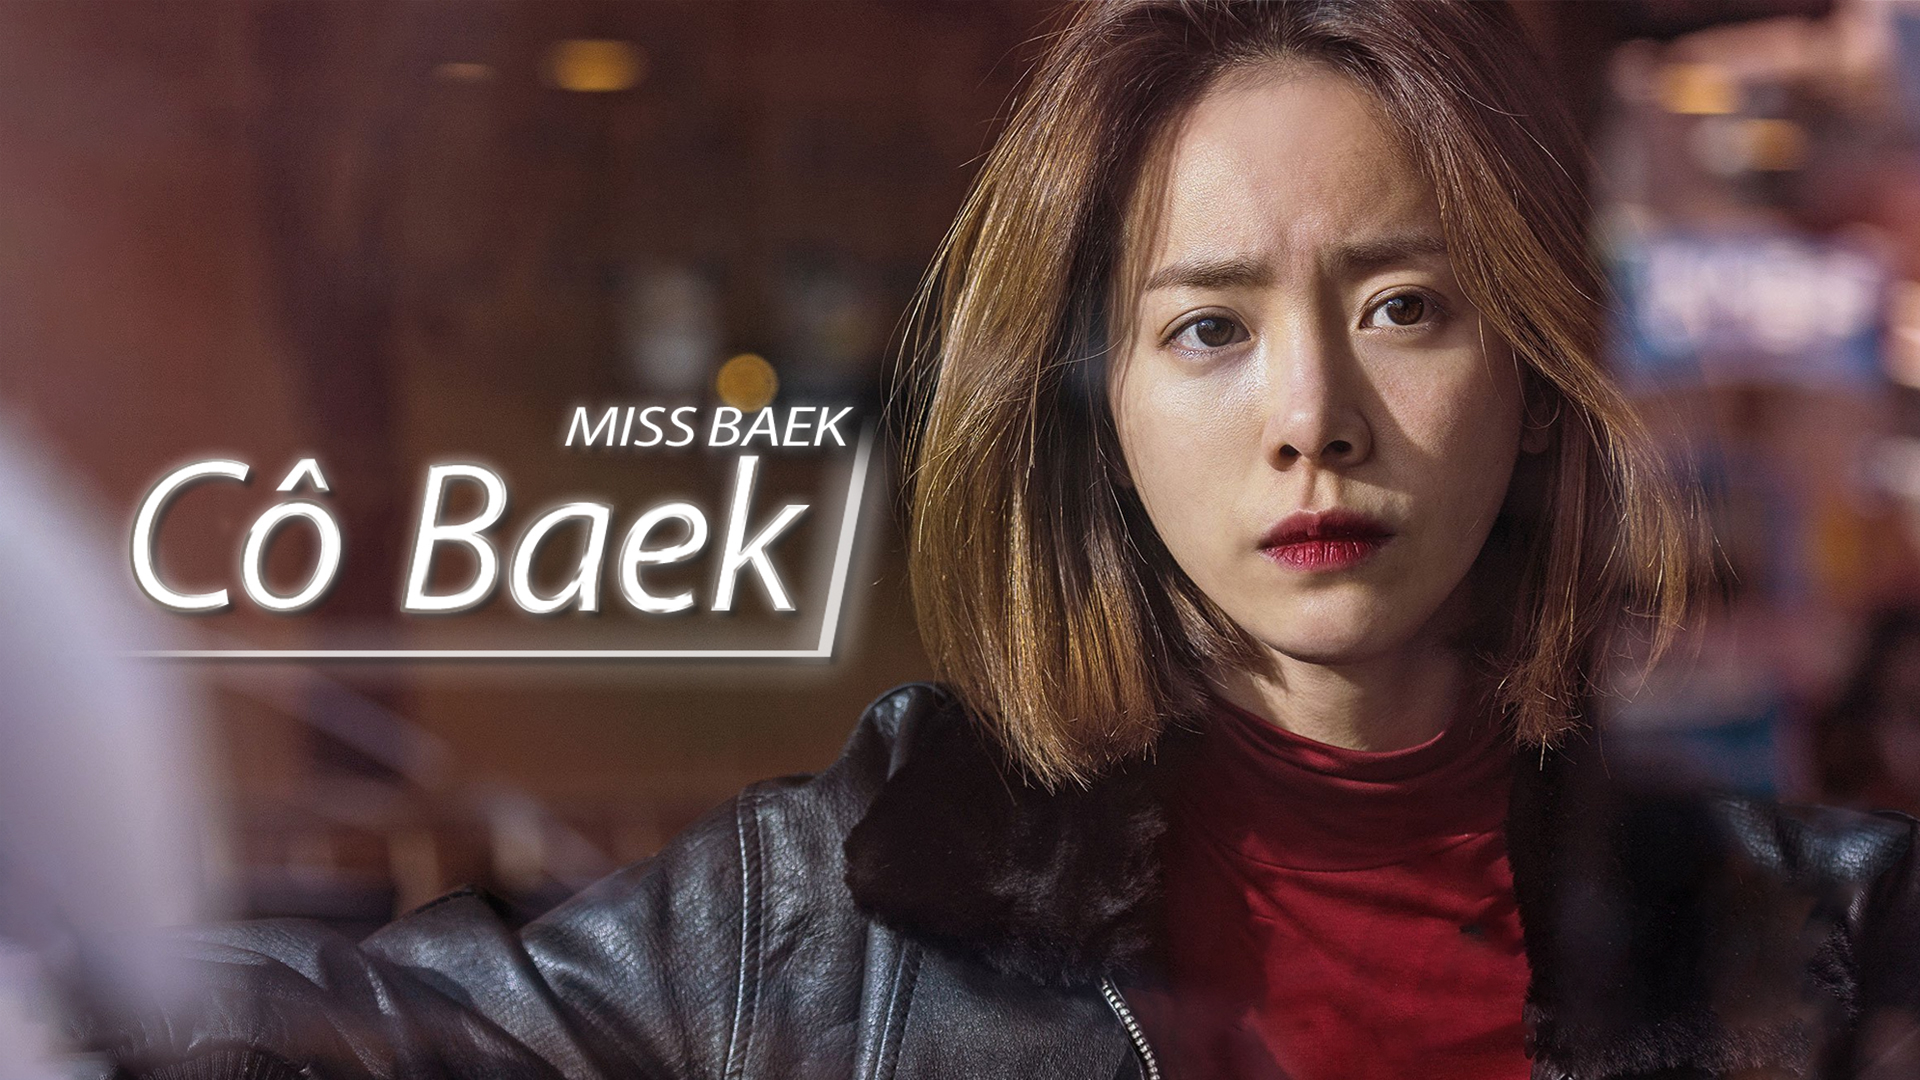 Cô Baek Miss Baek